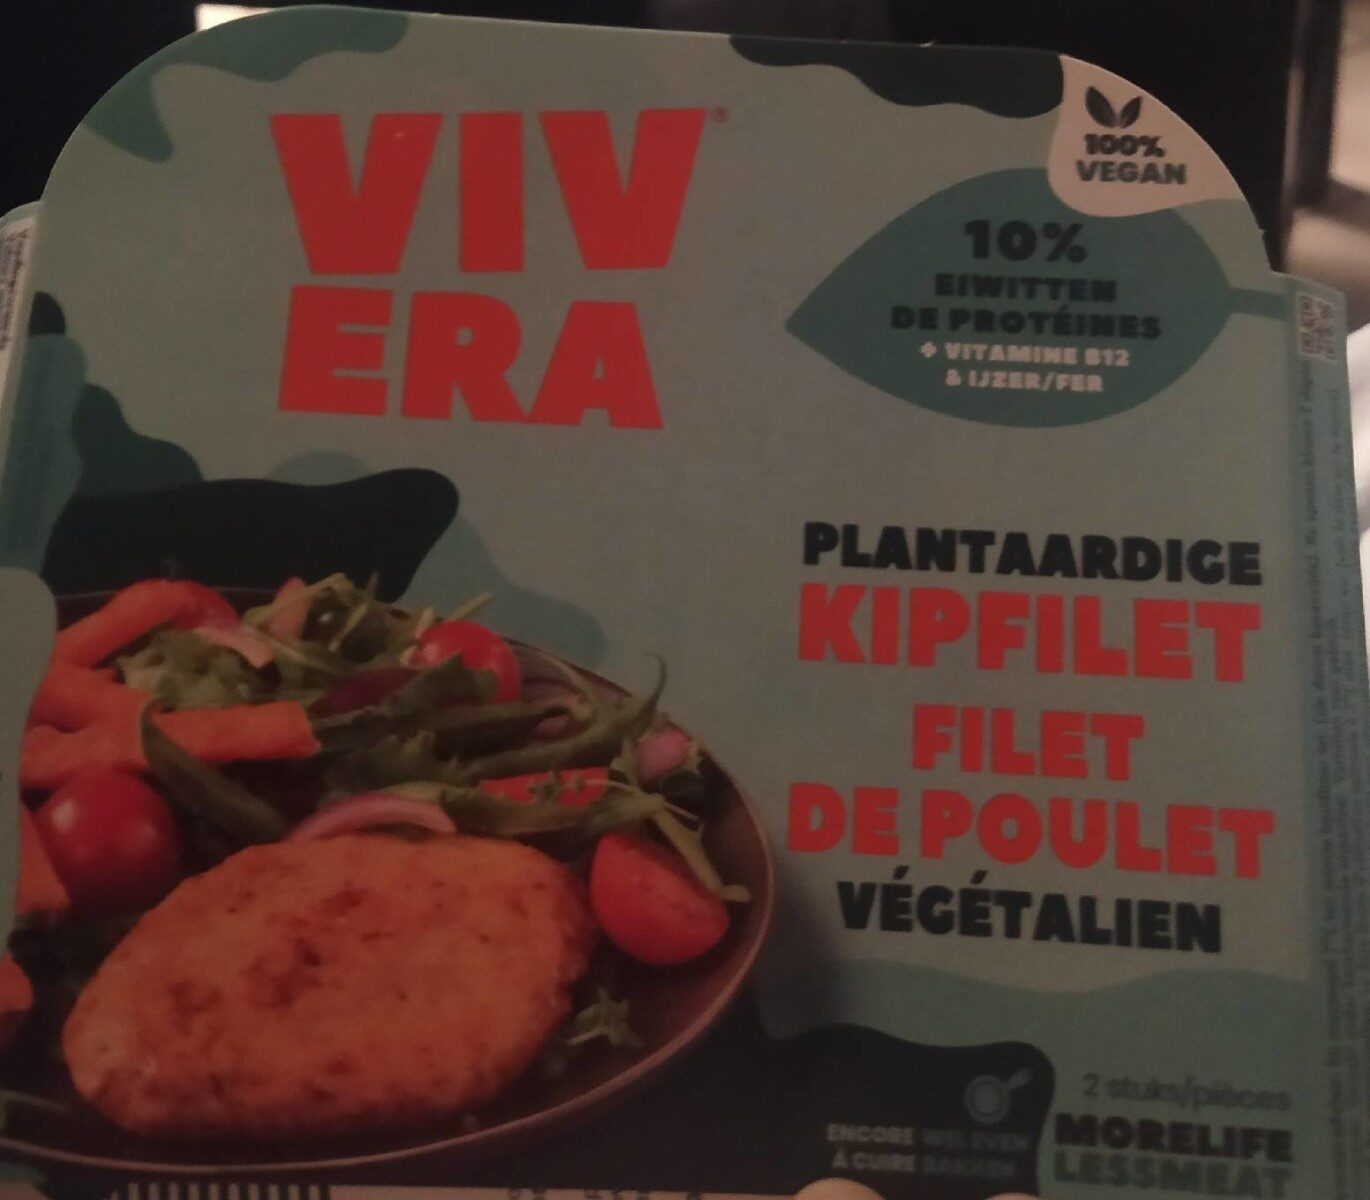 Filet de poulet végétalien - Product - fr